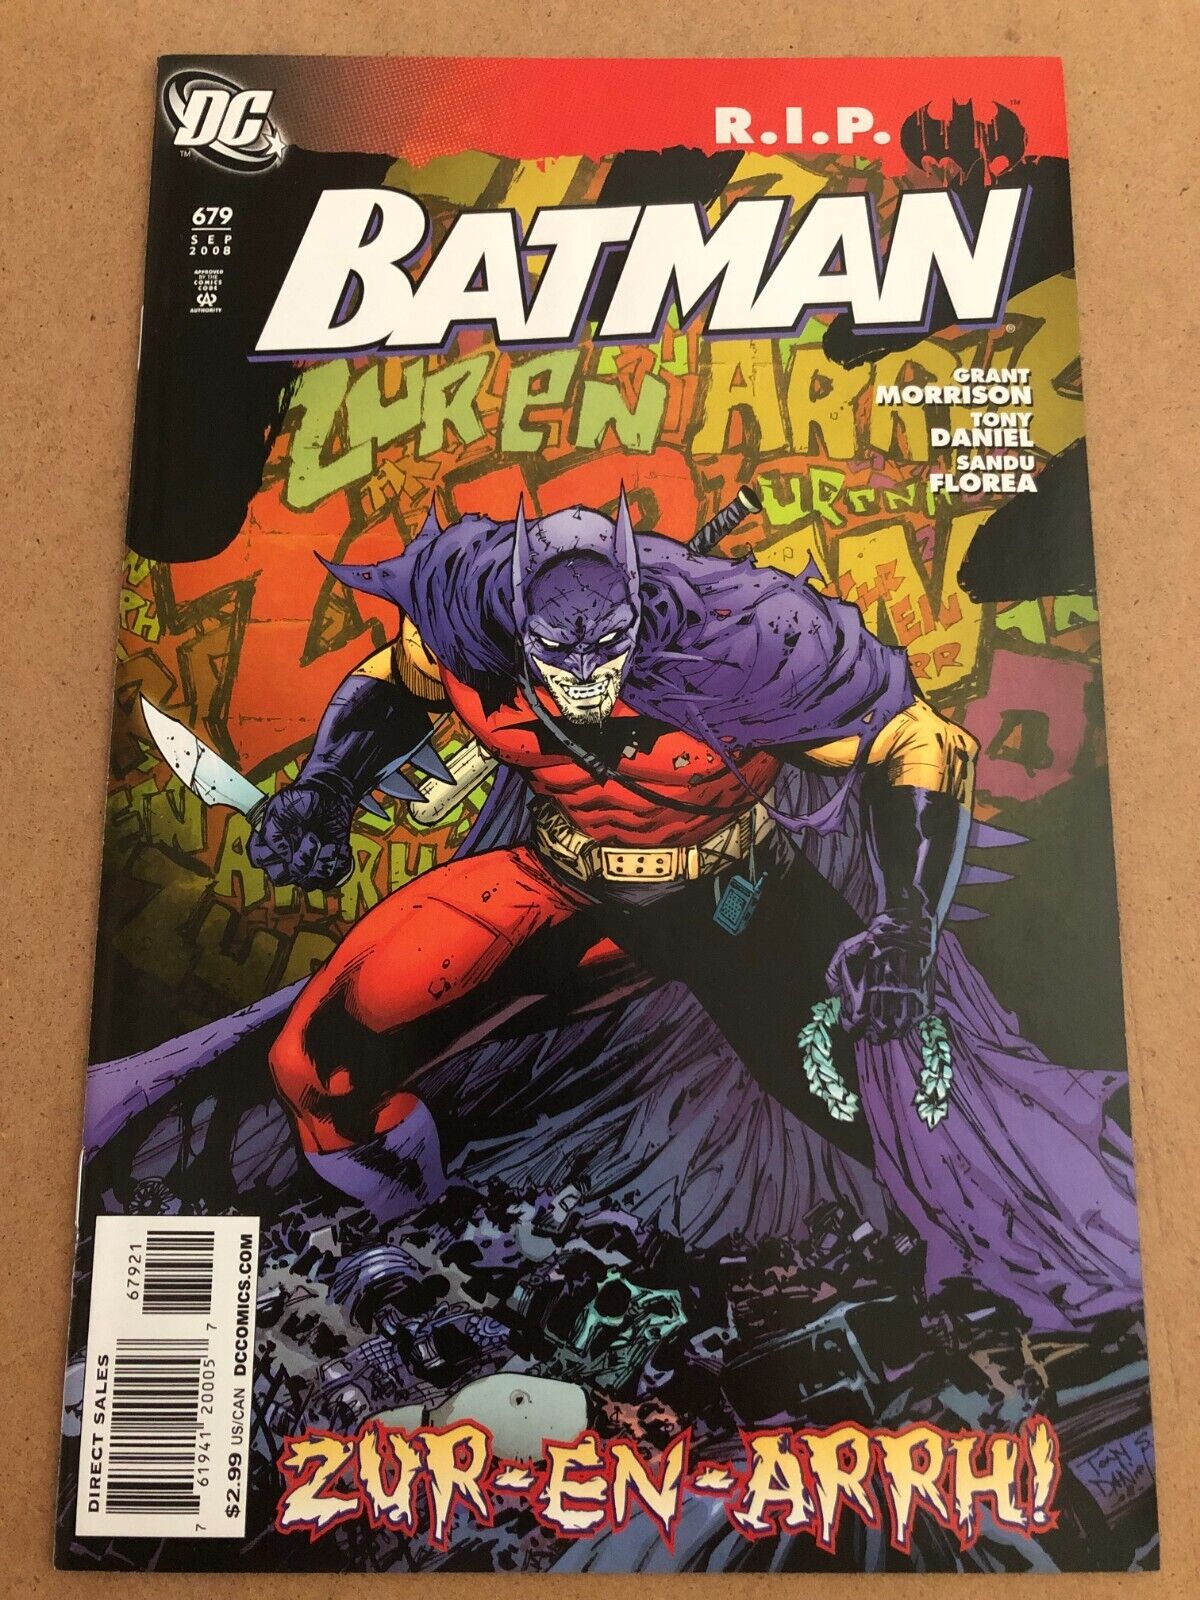 Batman #679 Tony Daniel 1:25 Variant Cover Zur-En-Arrh R.I.P Grant Morrison